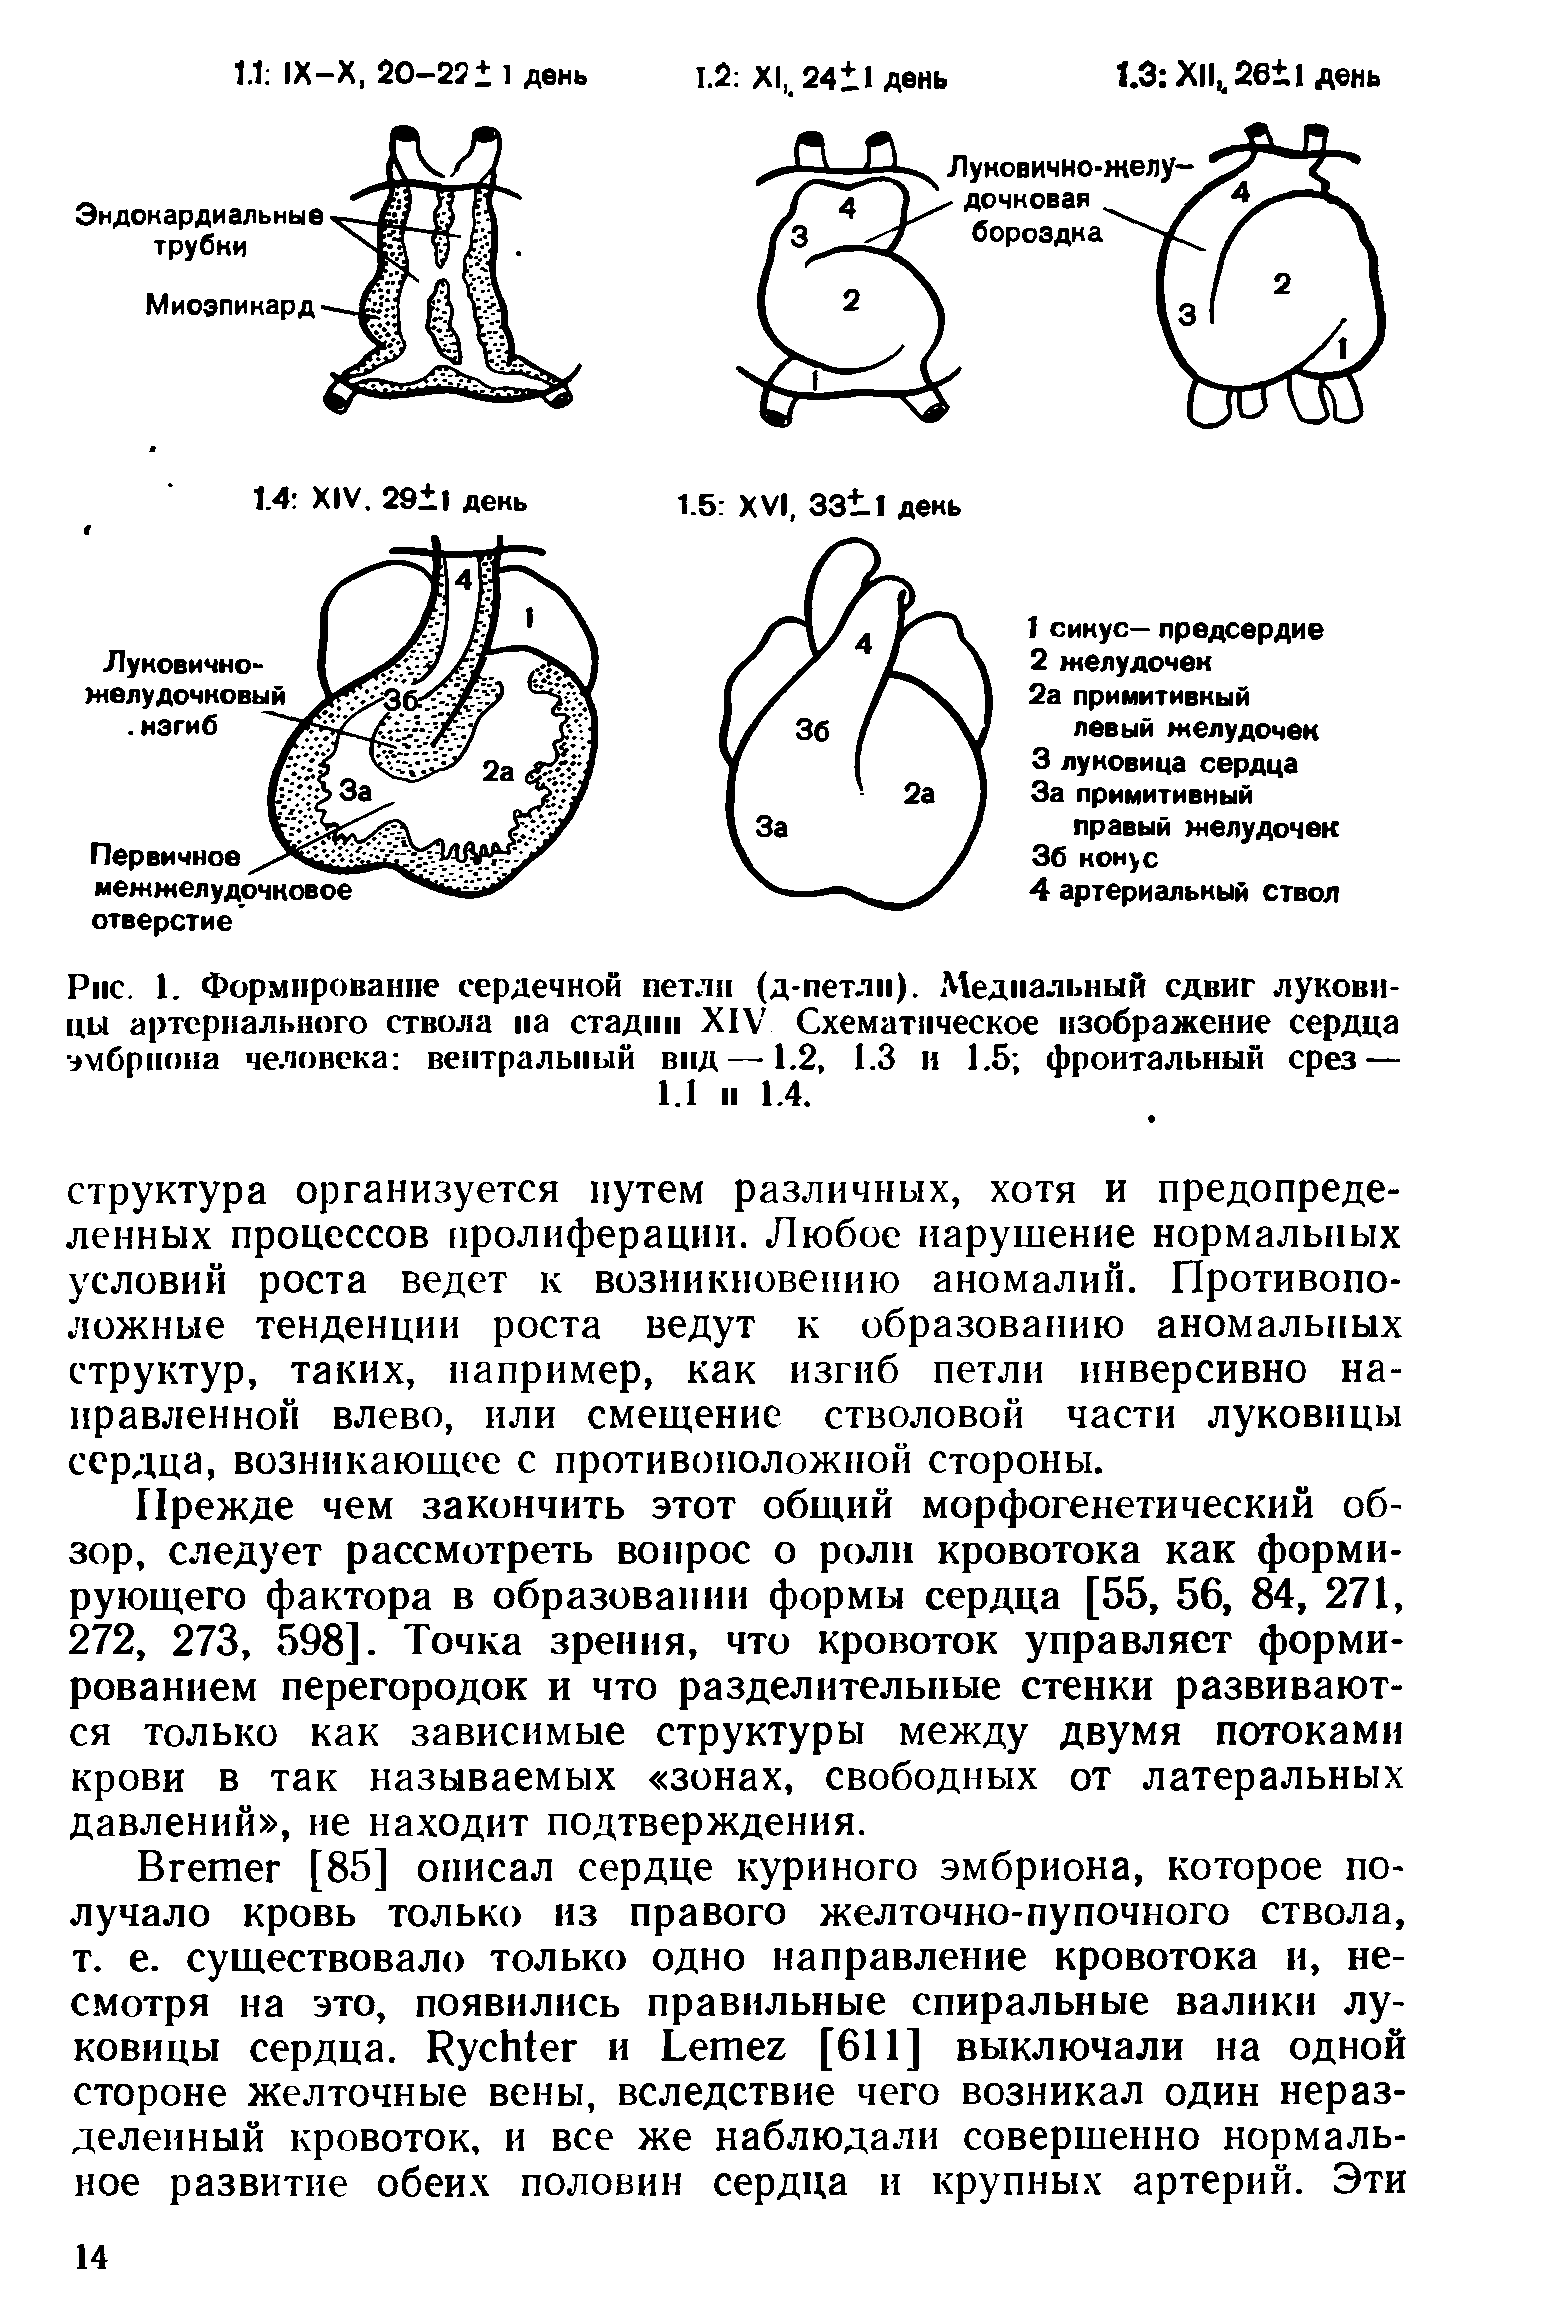 Рис. 1. Формирование сердечной петли (д-петлп). Медиальный сдвиг луковицы артериального ствола на стадии XIV Схематическое изображение сердца эмбриона человека вентральный вид—-1.2, 1.3 и 1.5 фронтальный срез — 1.1 п 1.4.